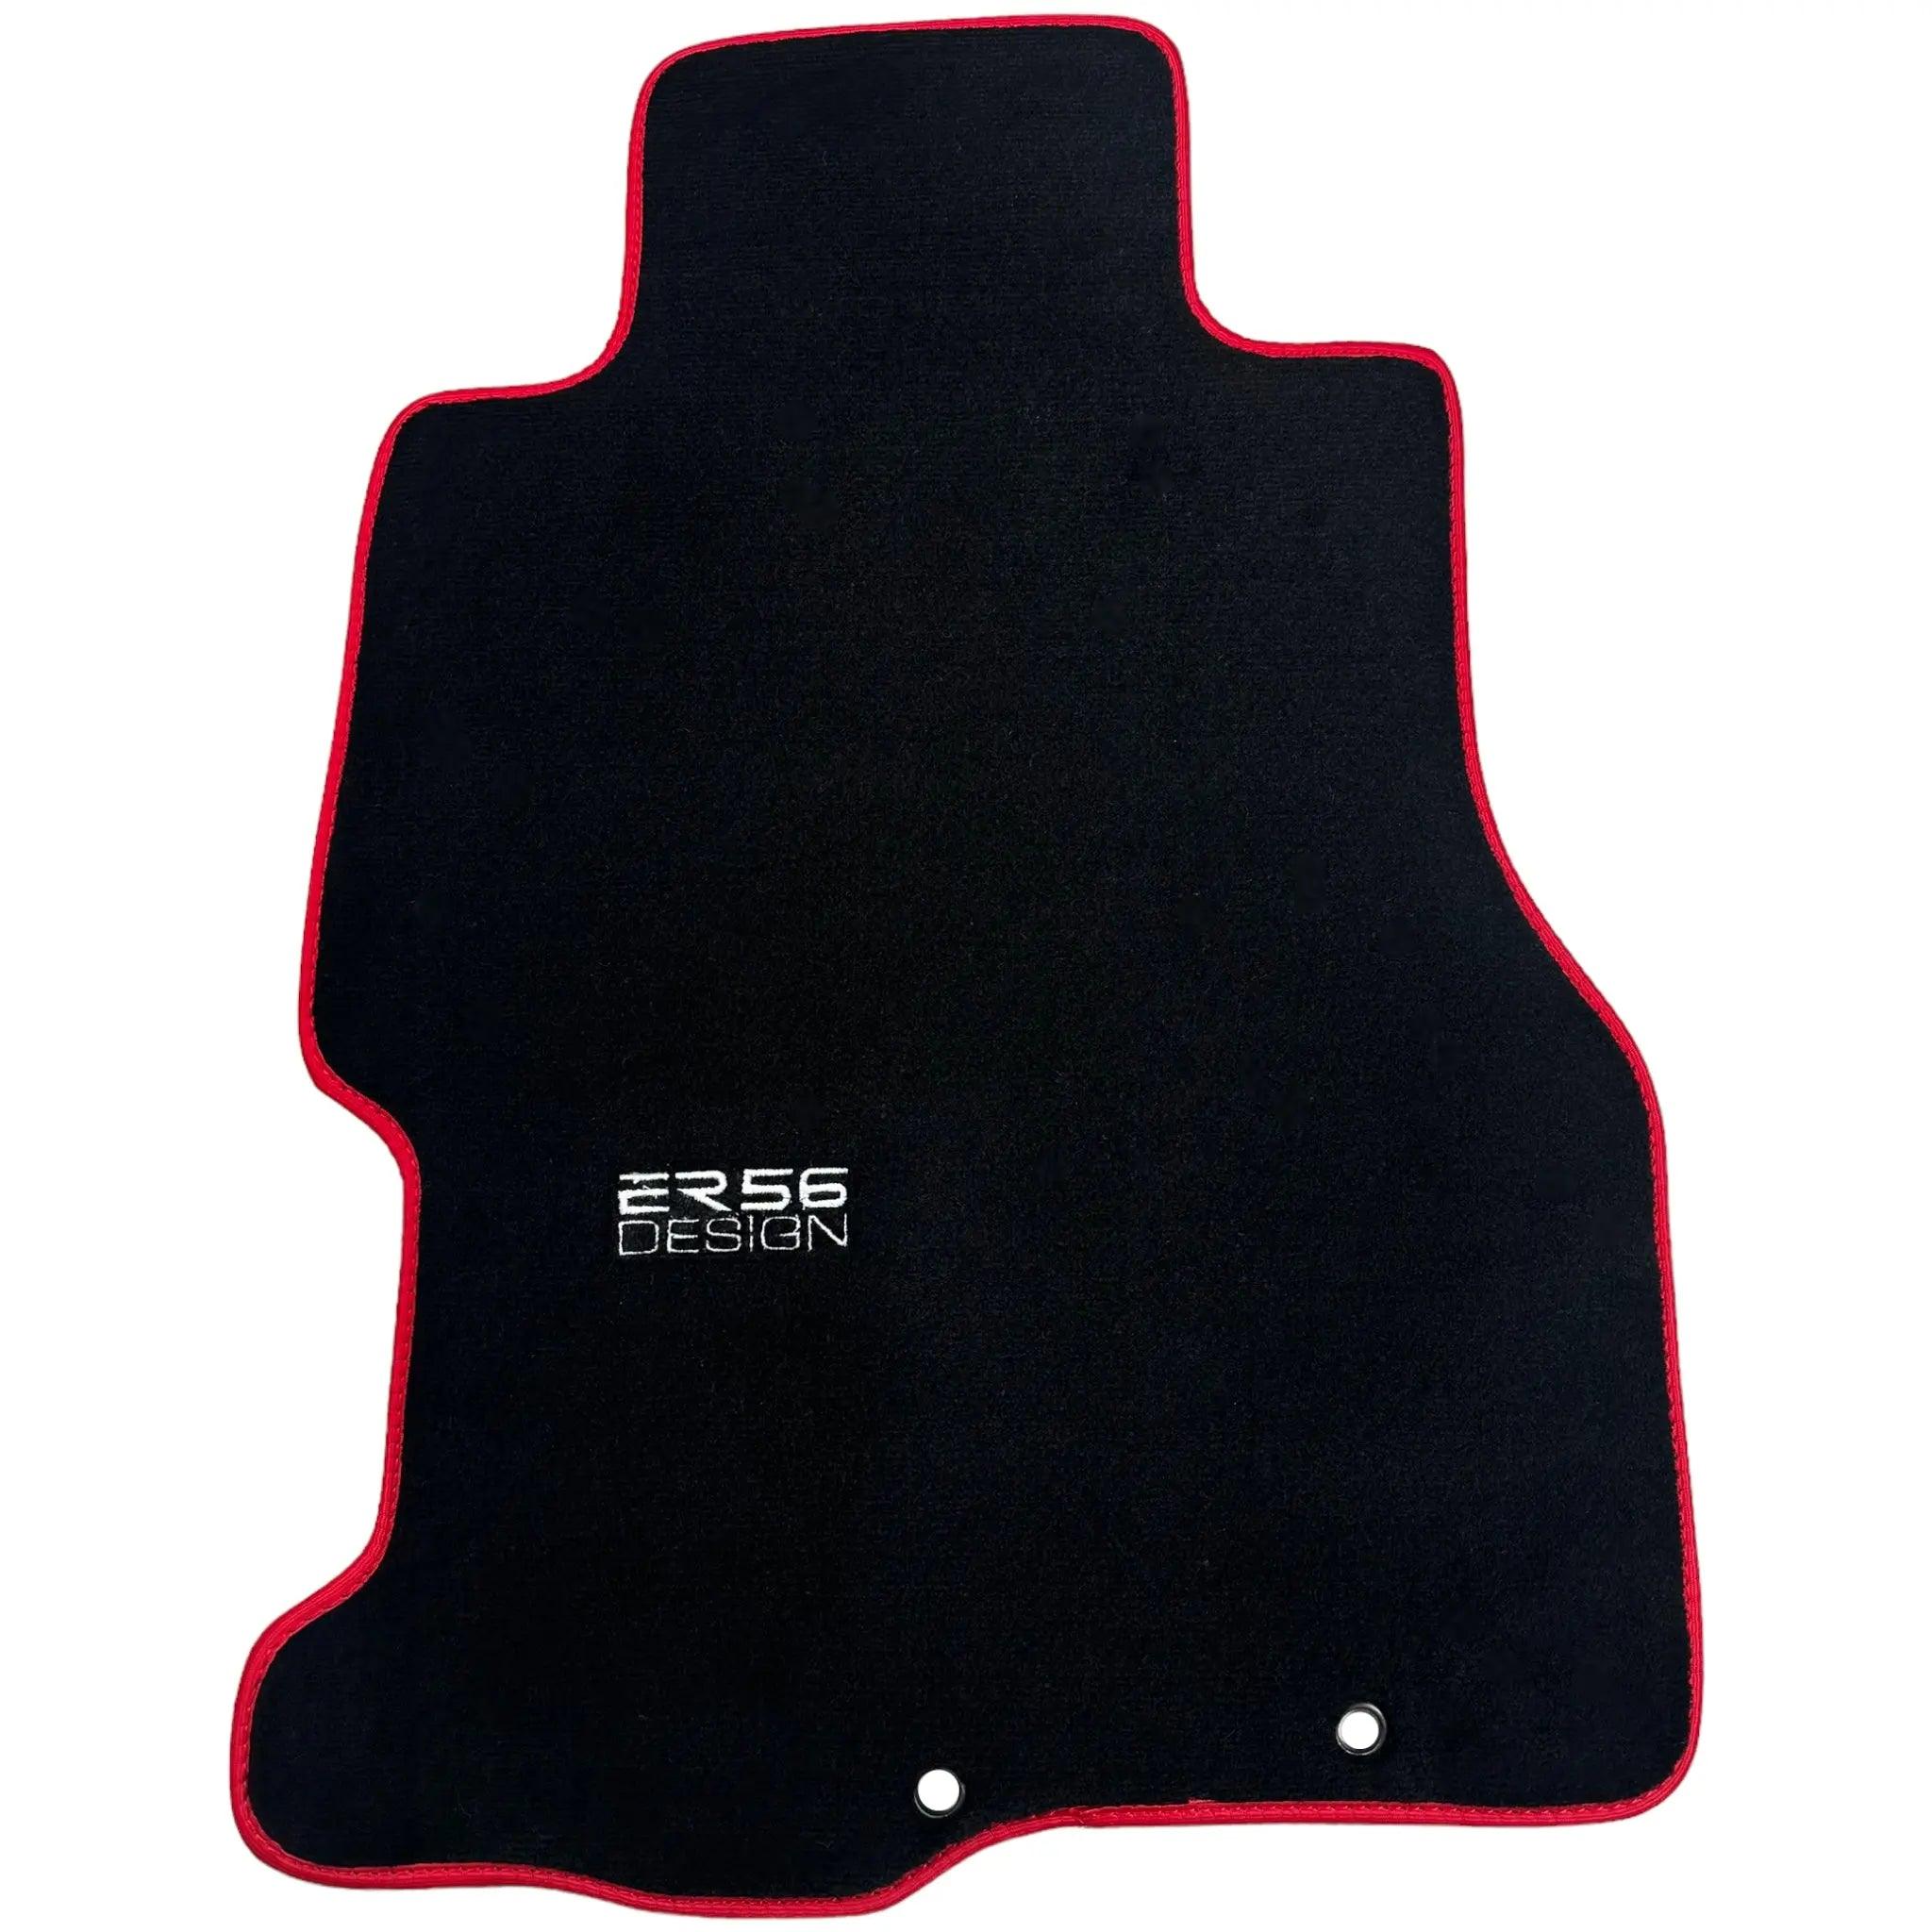 Black Floor Mats For Honda Civic VII (2001-2005) ER56 Design with Red Trim